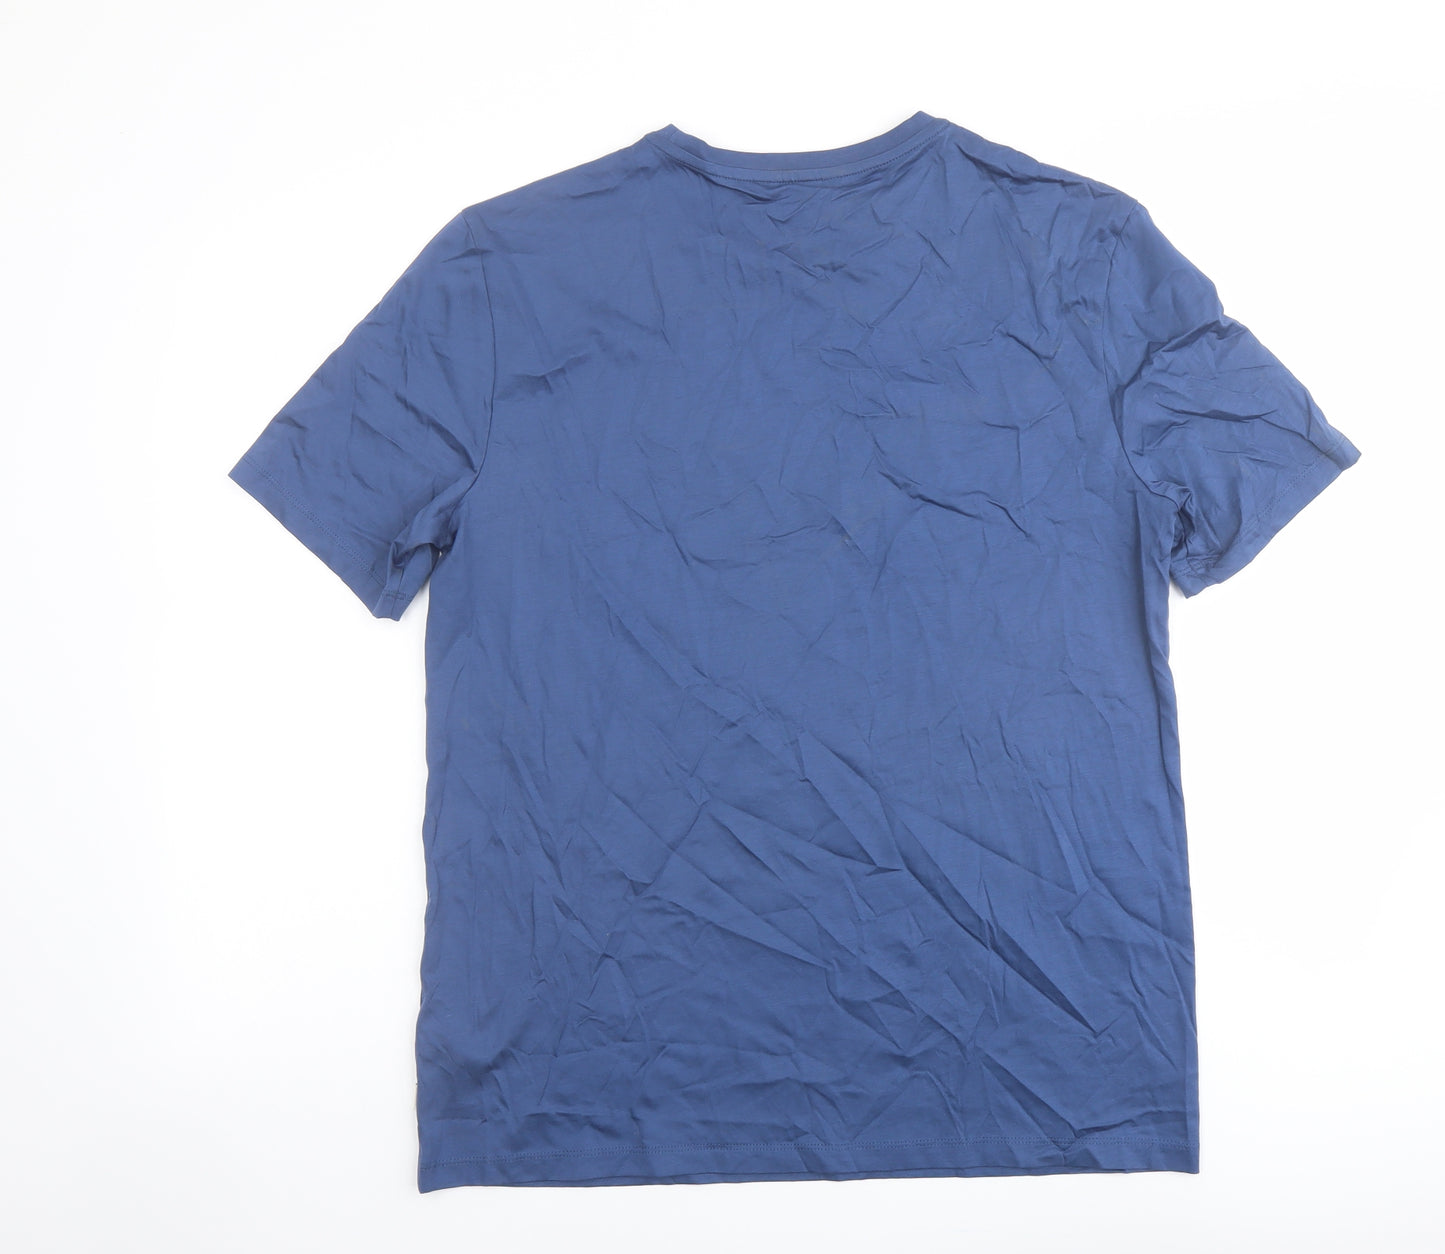 Autograph Mens Blue Cotton T-Shirt Size M Round Neck